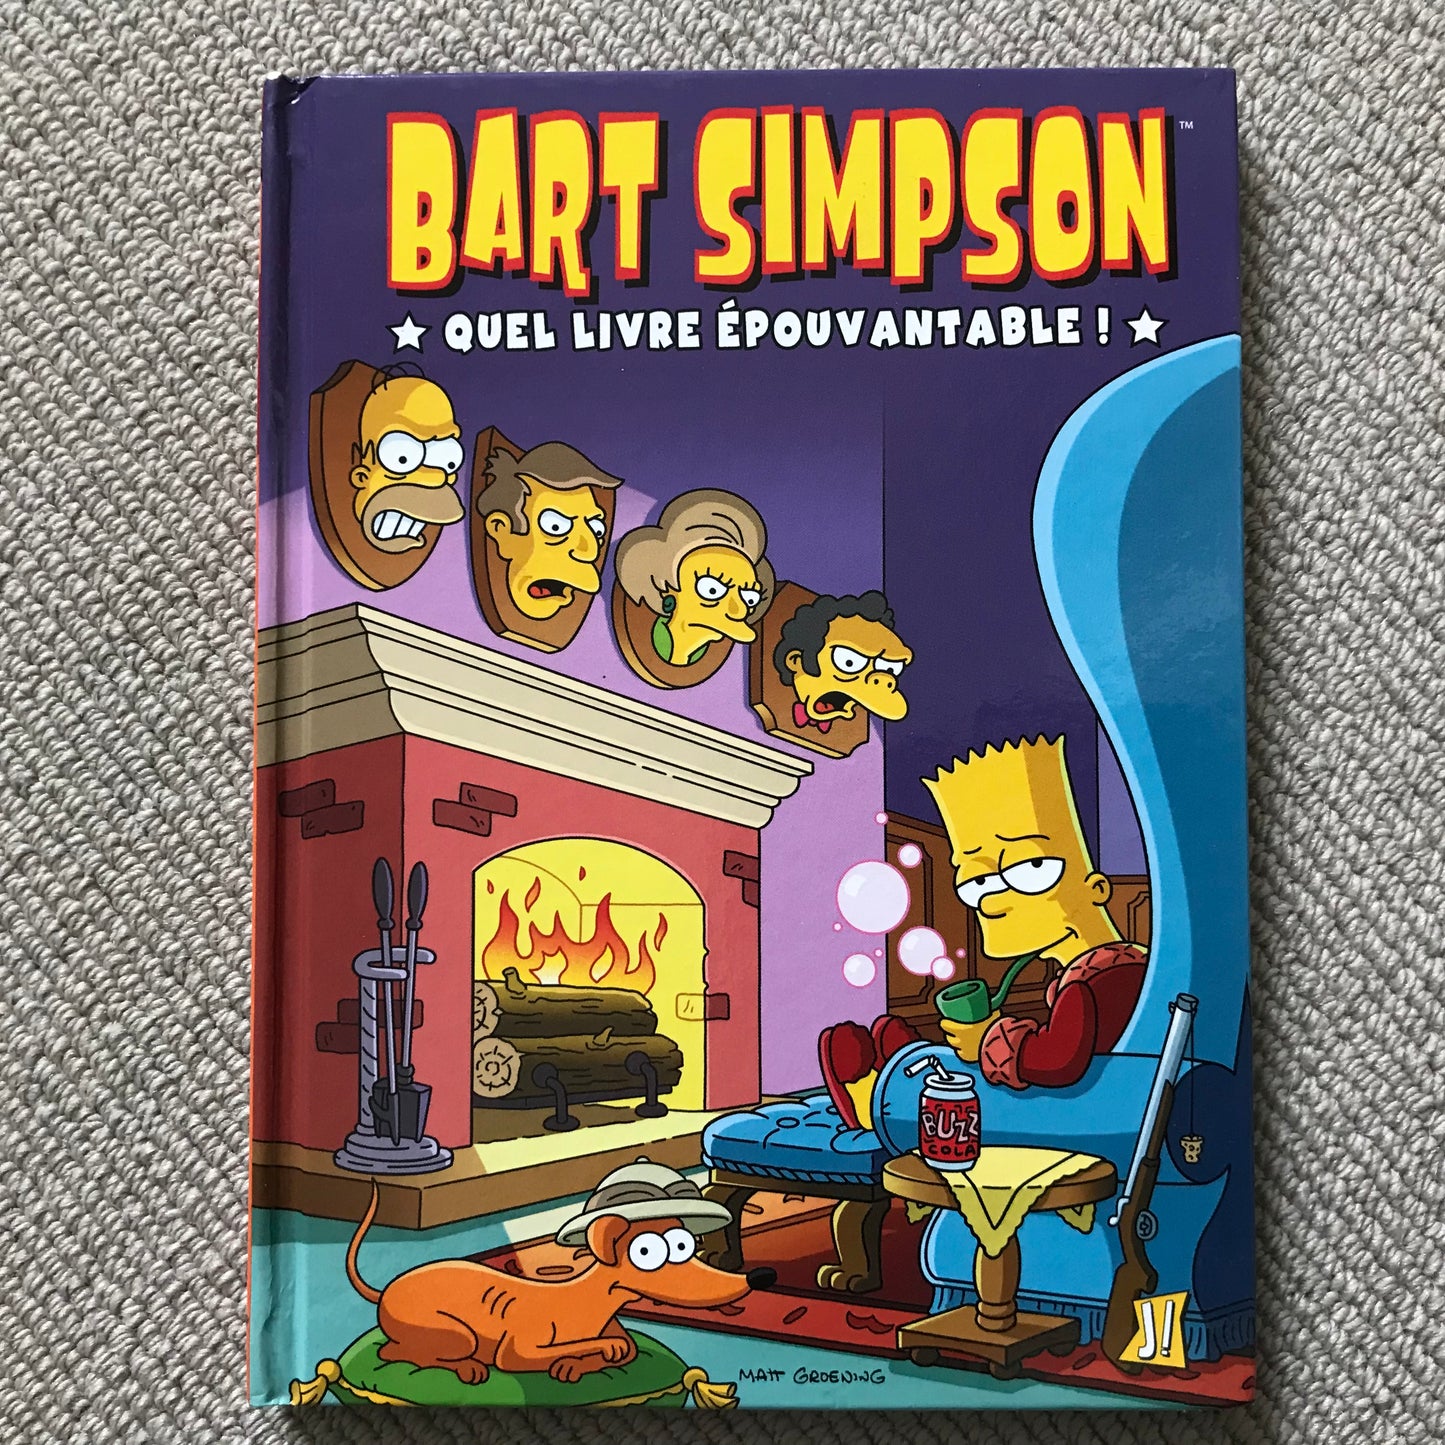 Les Simpson: Bart Simpson T04, Quel livre épouvantable ! - Matt Groening